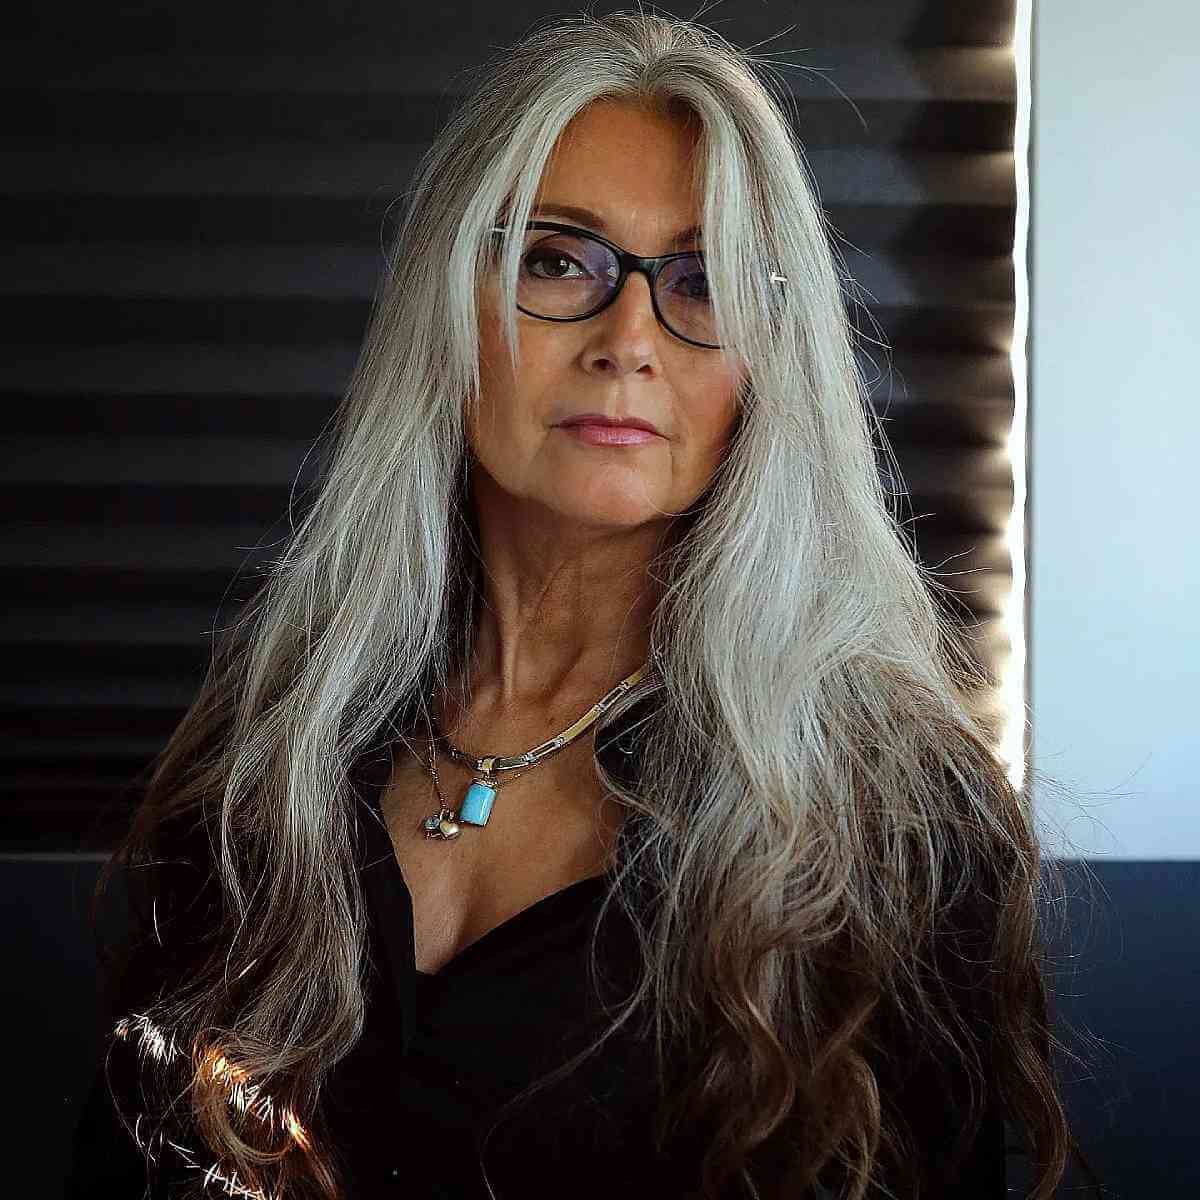 Penteado prateado longo para mulheres com mais de 50 anos com óculos